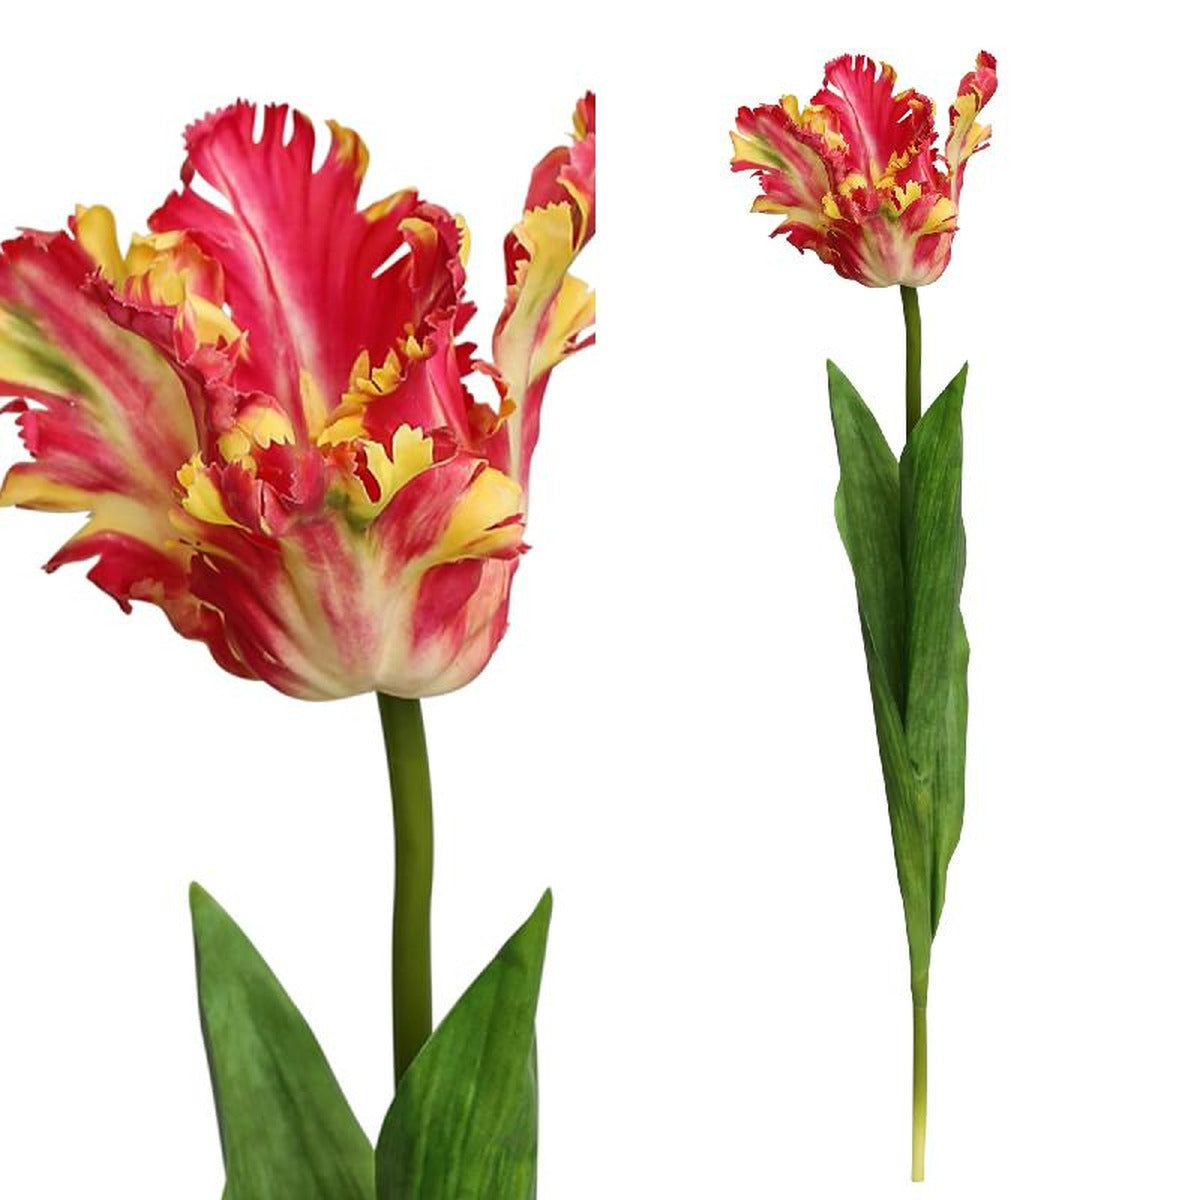 Ptmd tulilip fleur artificielle - 8 x 10 x 65 cm - rouge